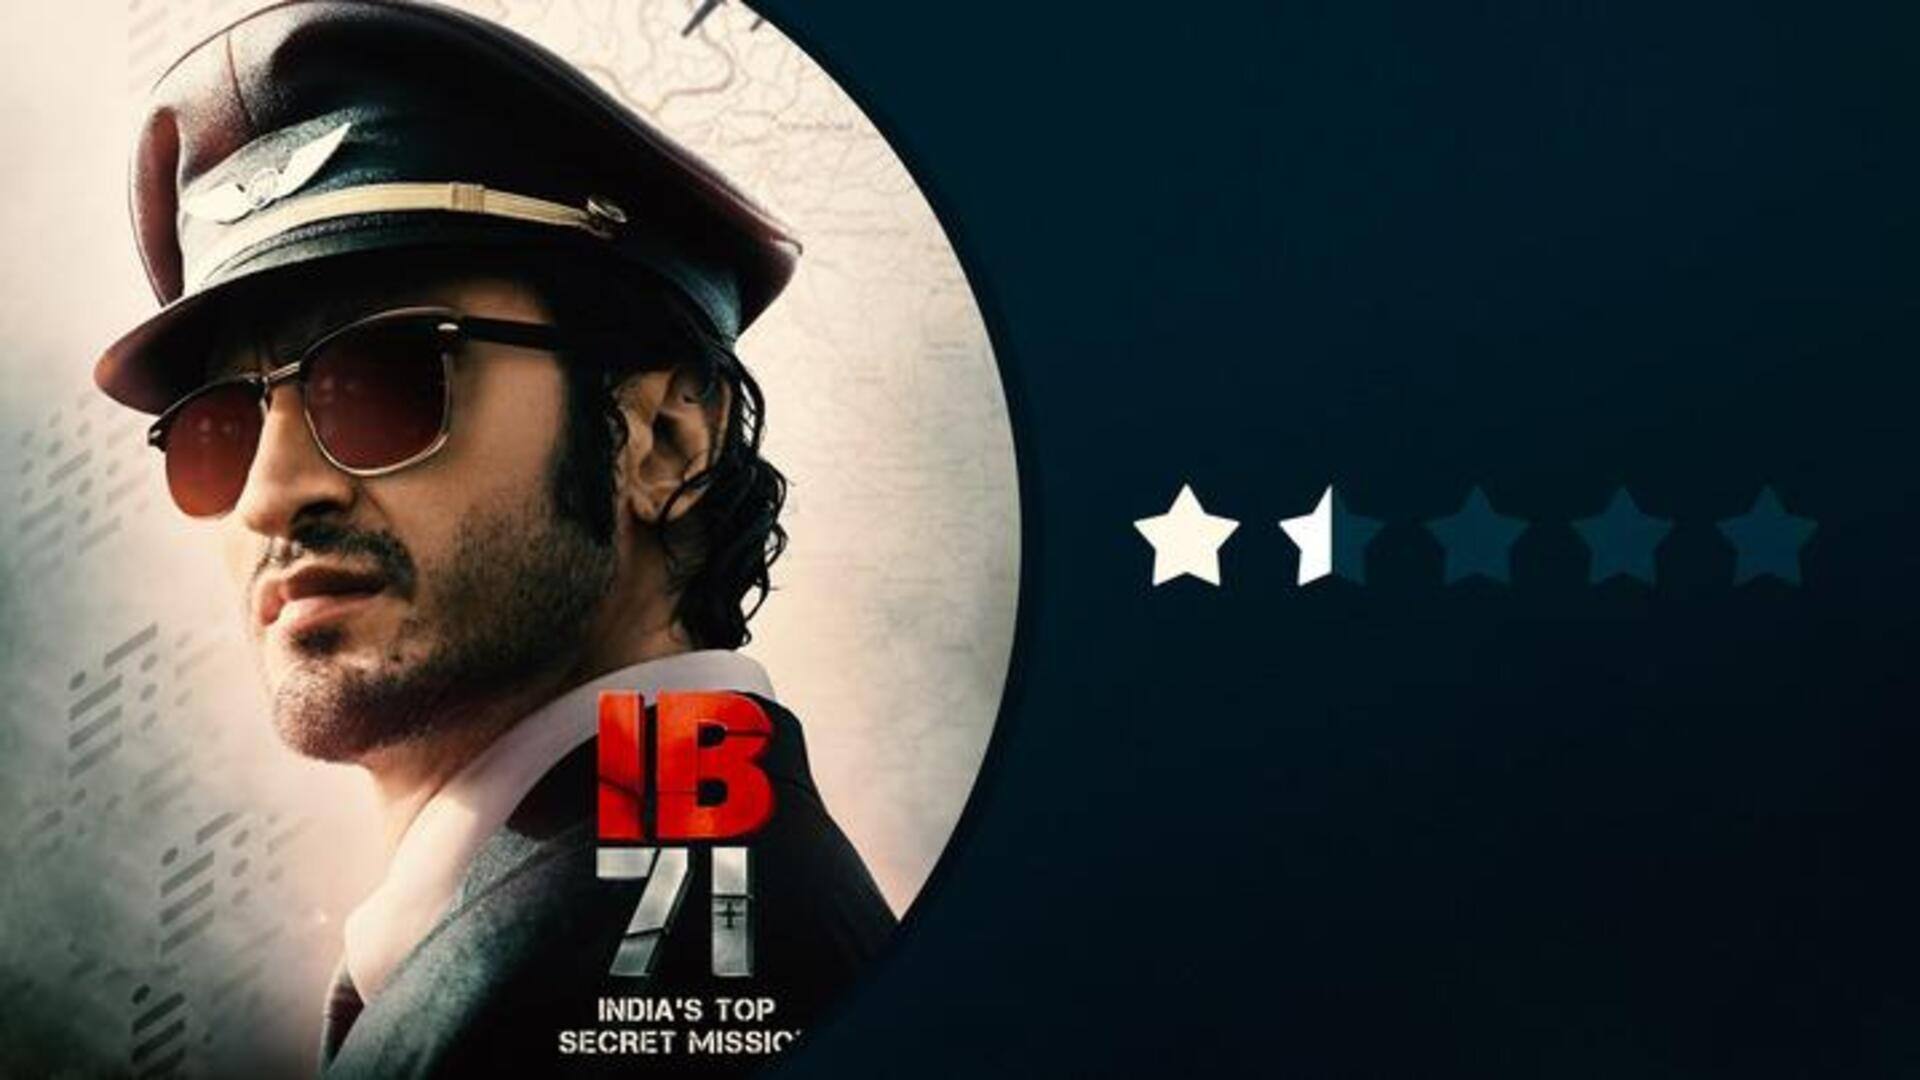 'IB71' रिव्यू: विद्युत जामवाल की फिल्म की जान बना विशाल जेठवा का शानदार अभिनय